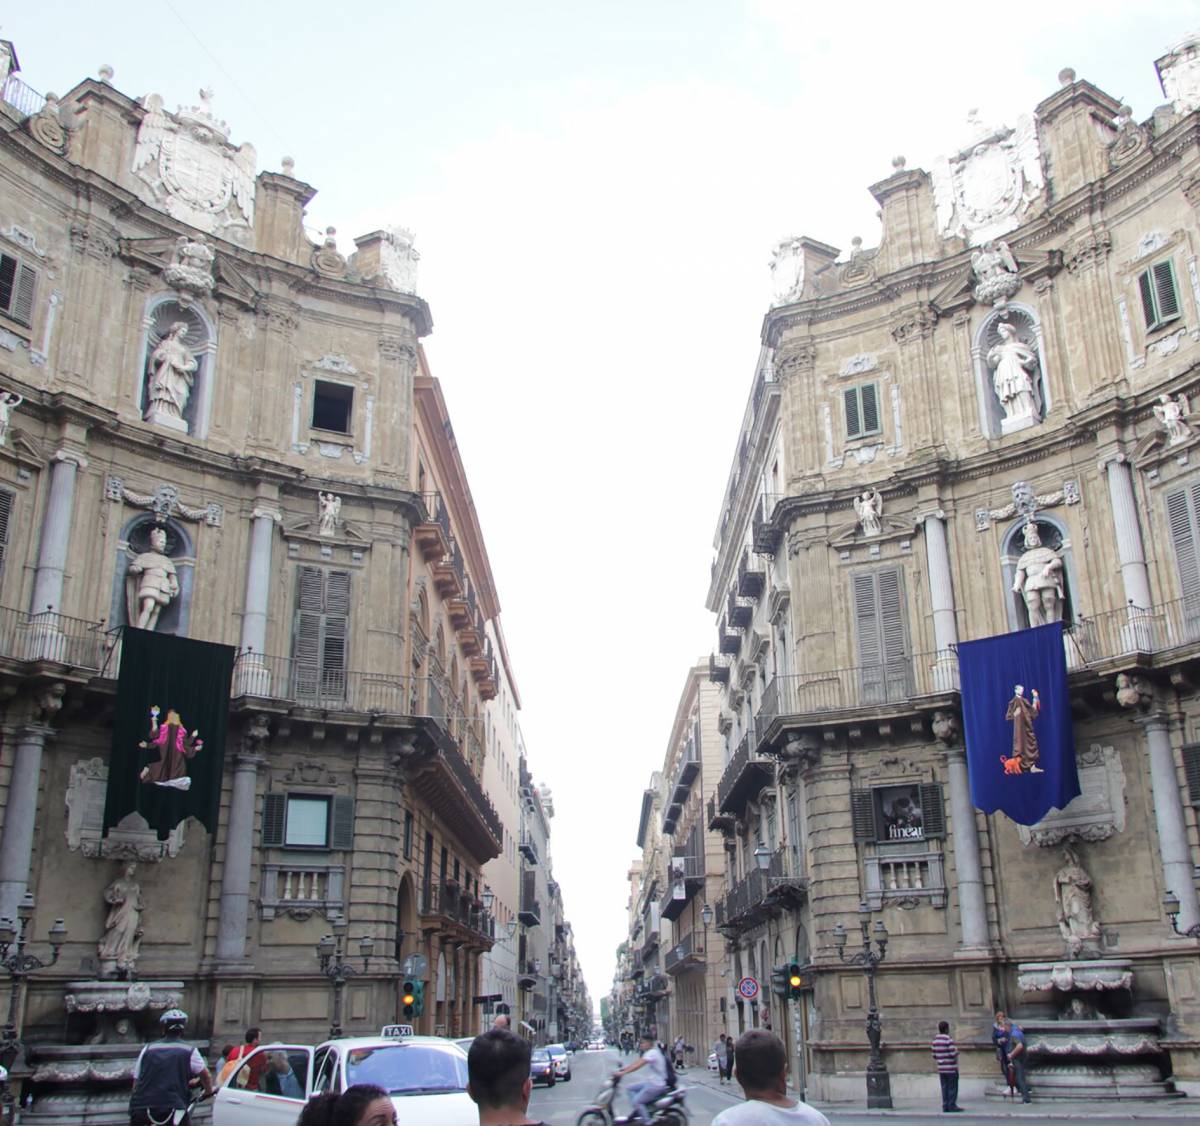 La "Manifesta" superiorità di Palermo come città d'arte